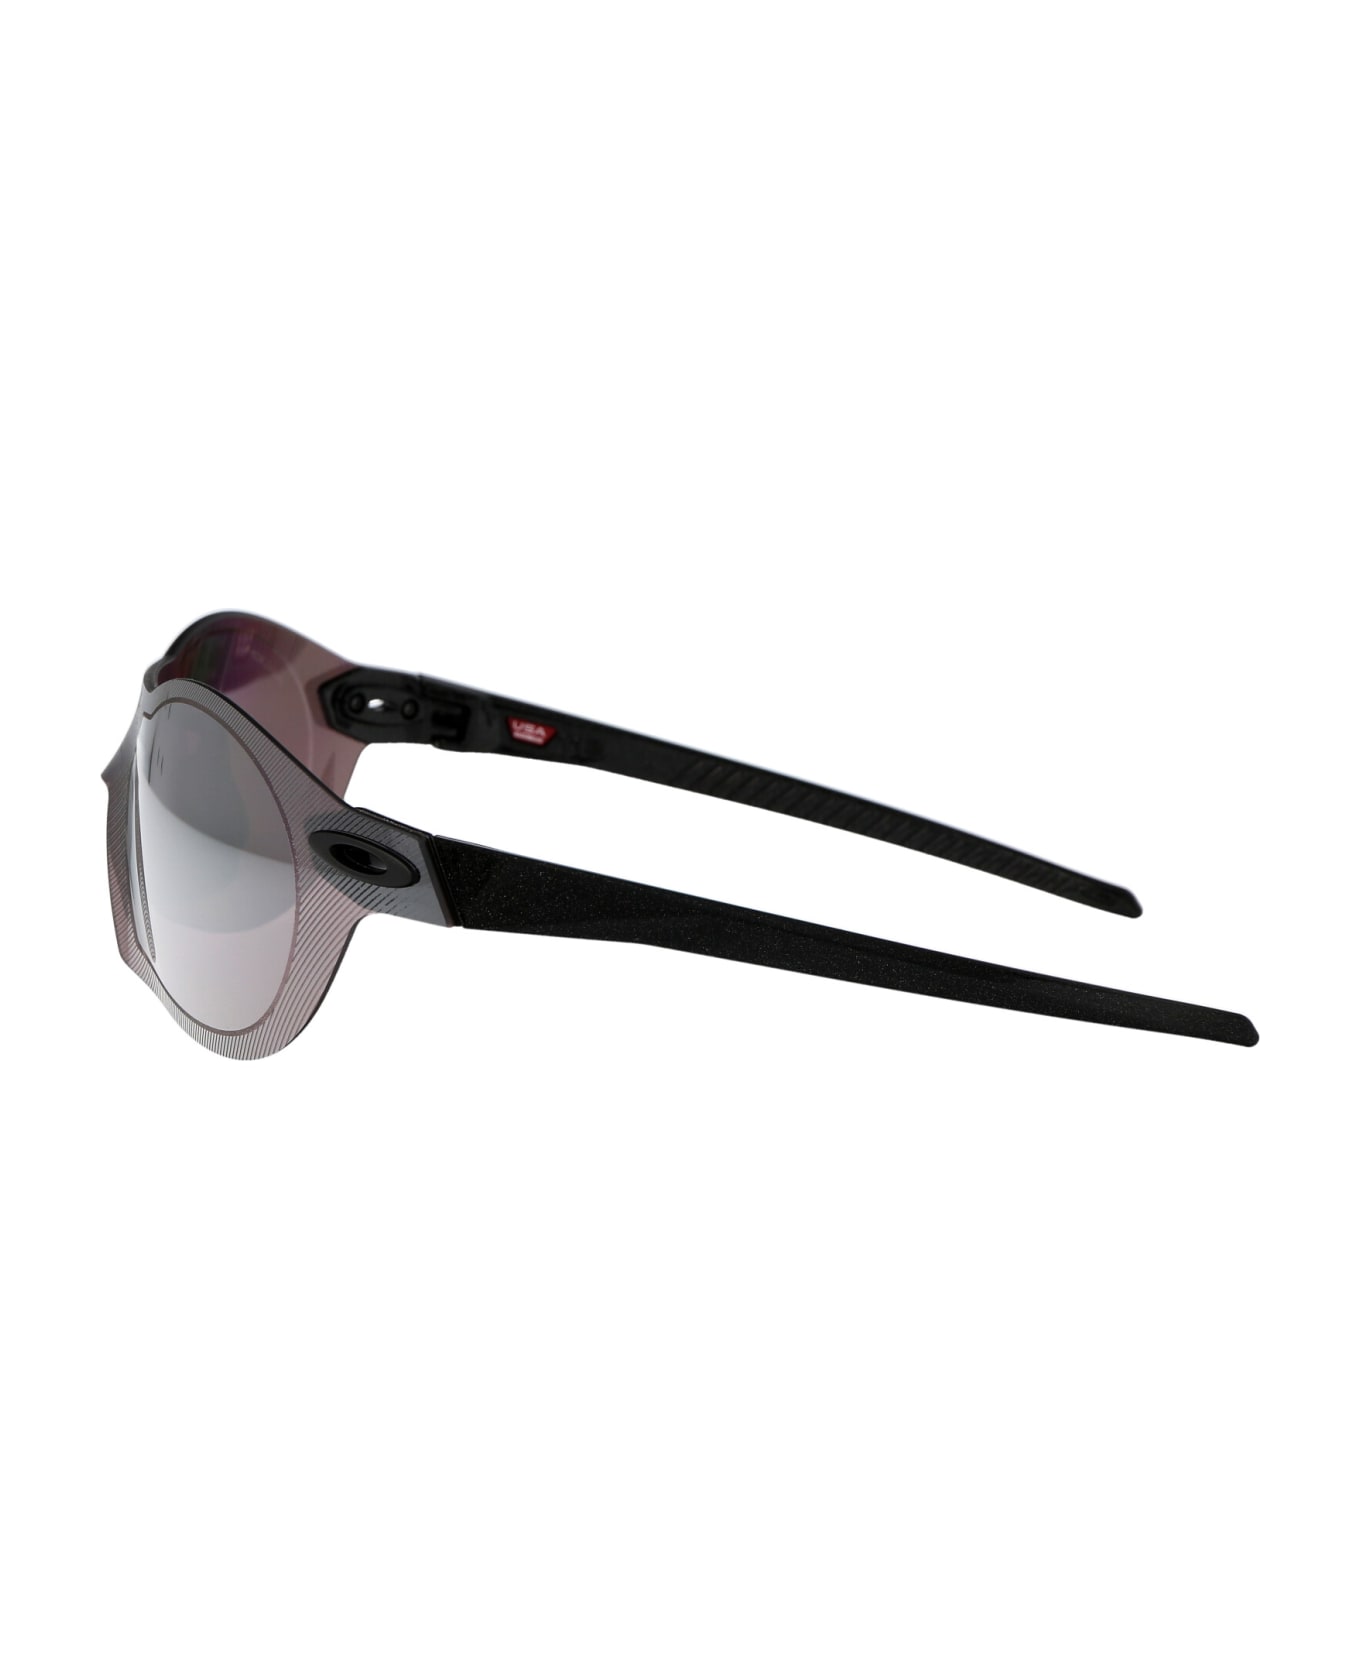 Oakley Re:subzero Sunglasses - 909814 Dark Galaxy